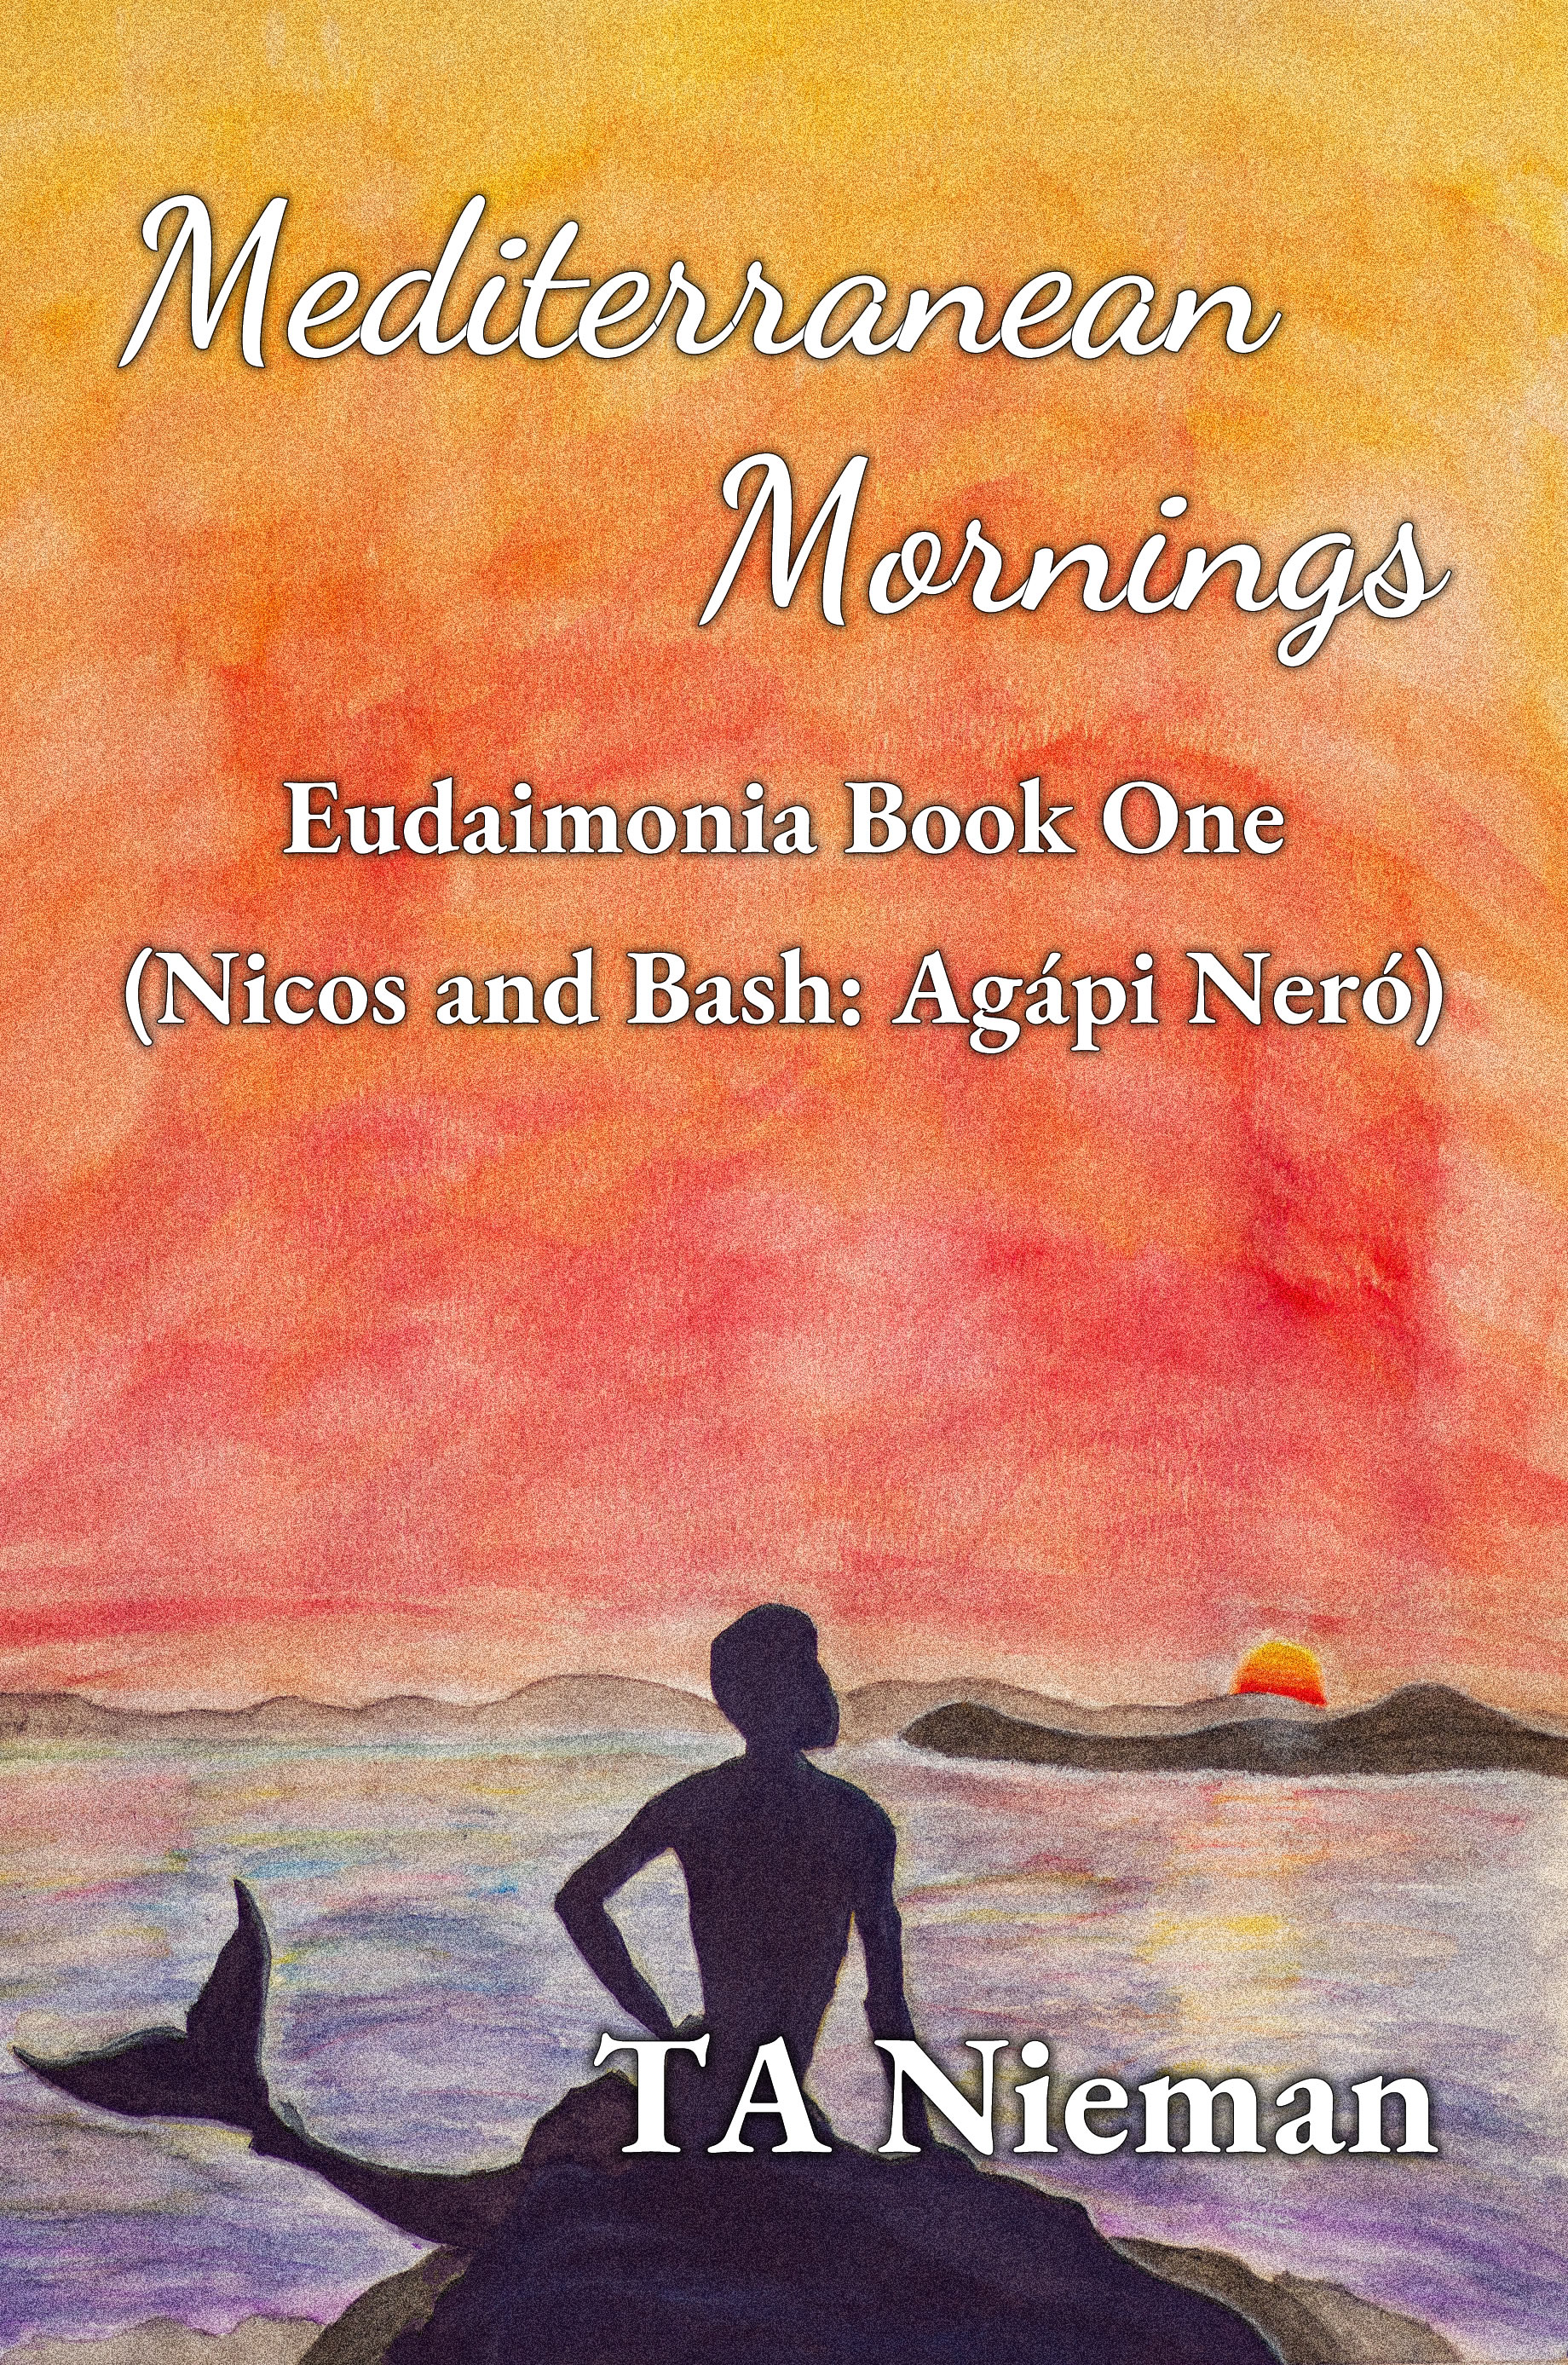 Mediterranean Mornings by TA Nieman